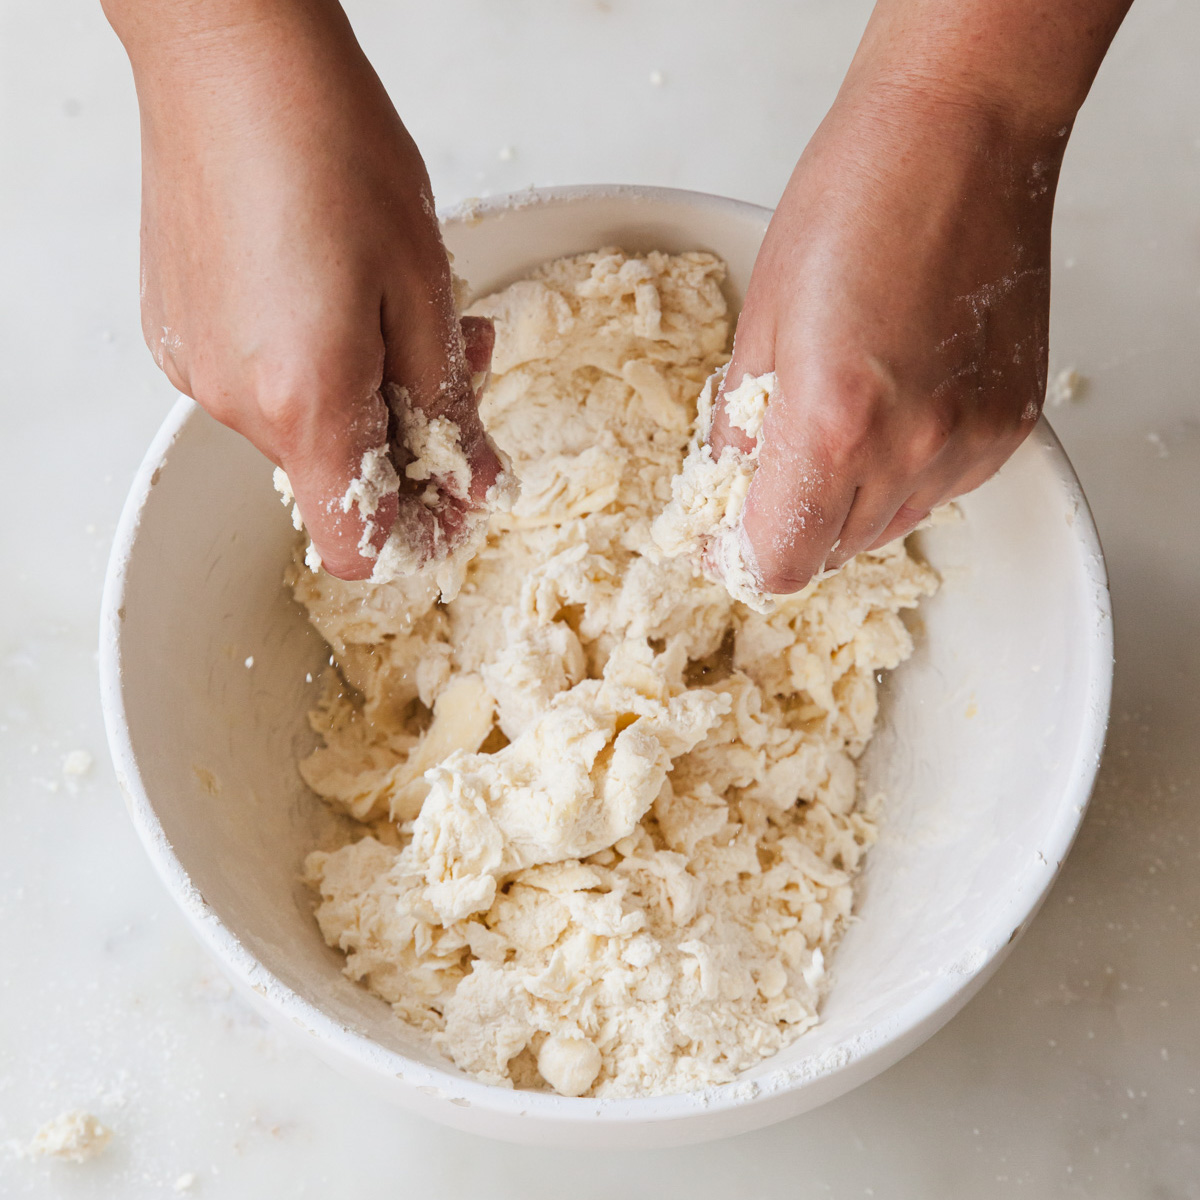 Kitchen Essentials: Pastry blender creates creamy dough, Food